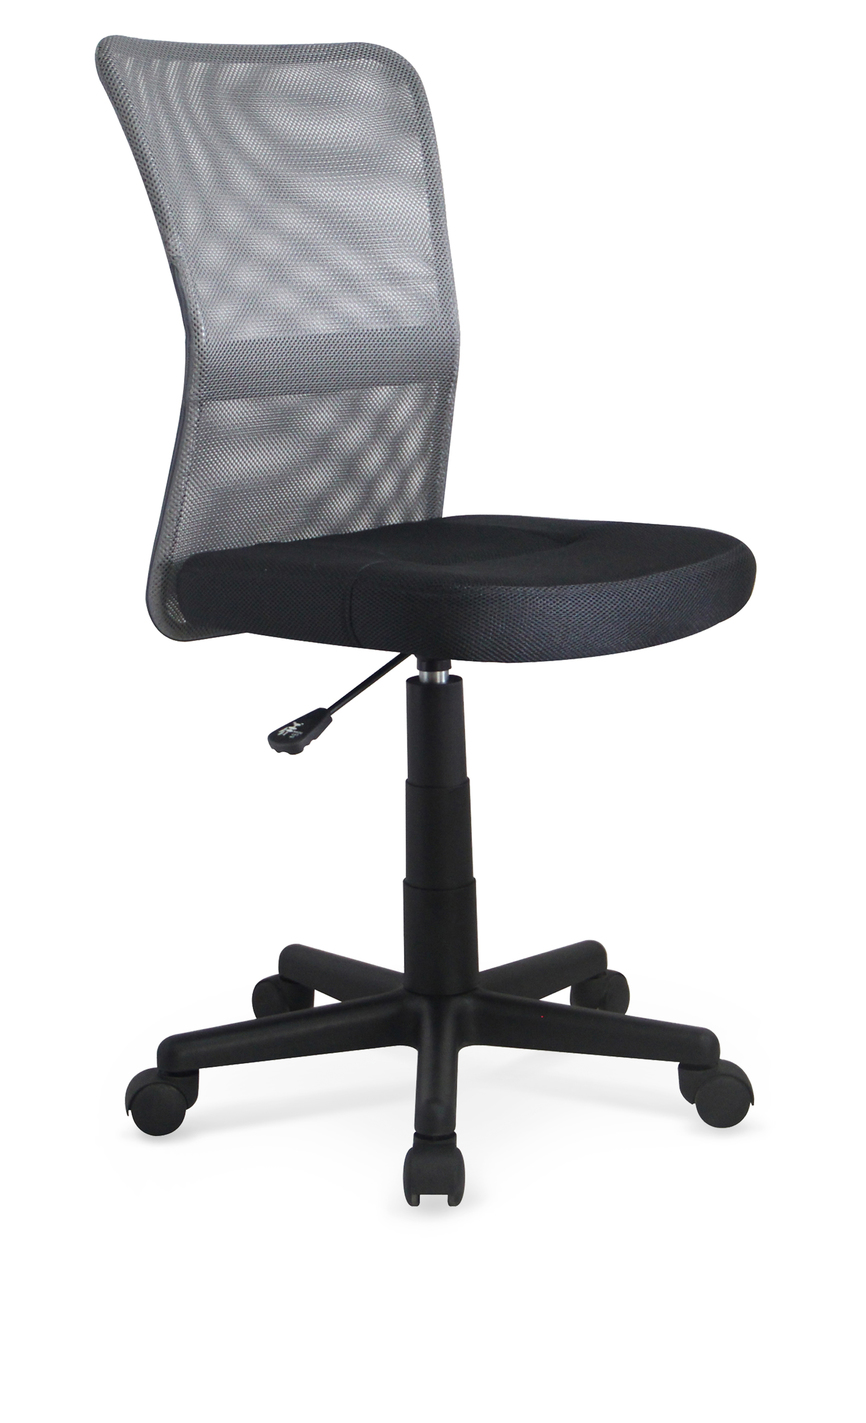 DINGO chair color: grey/black